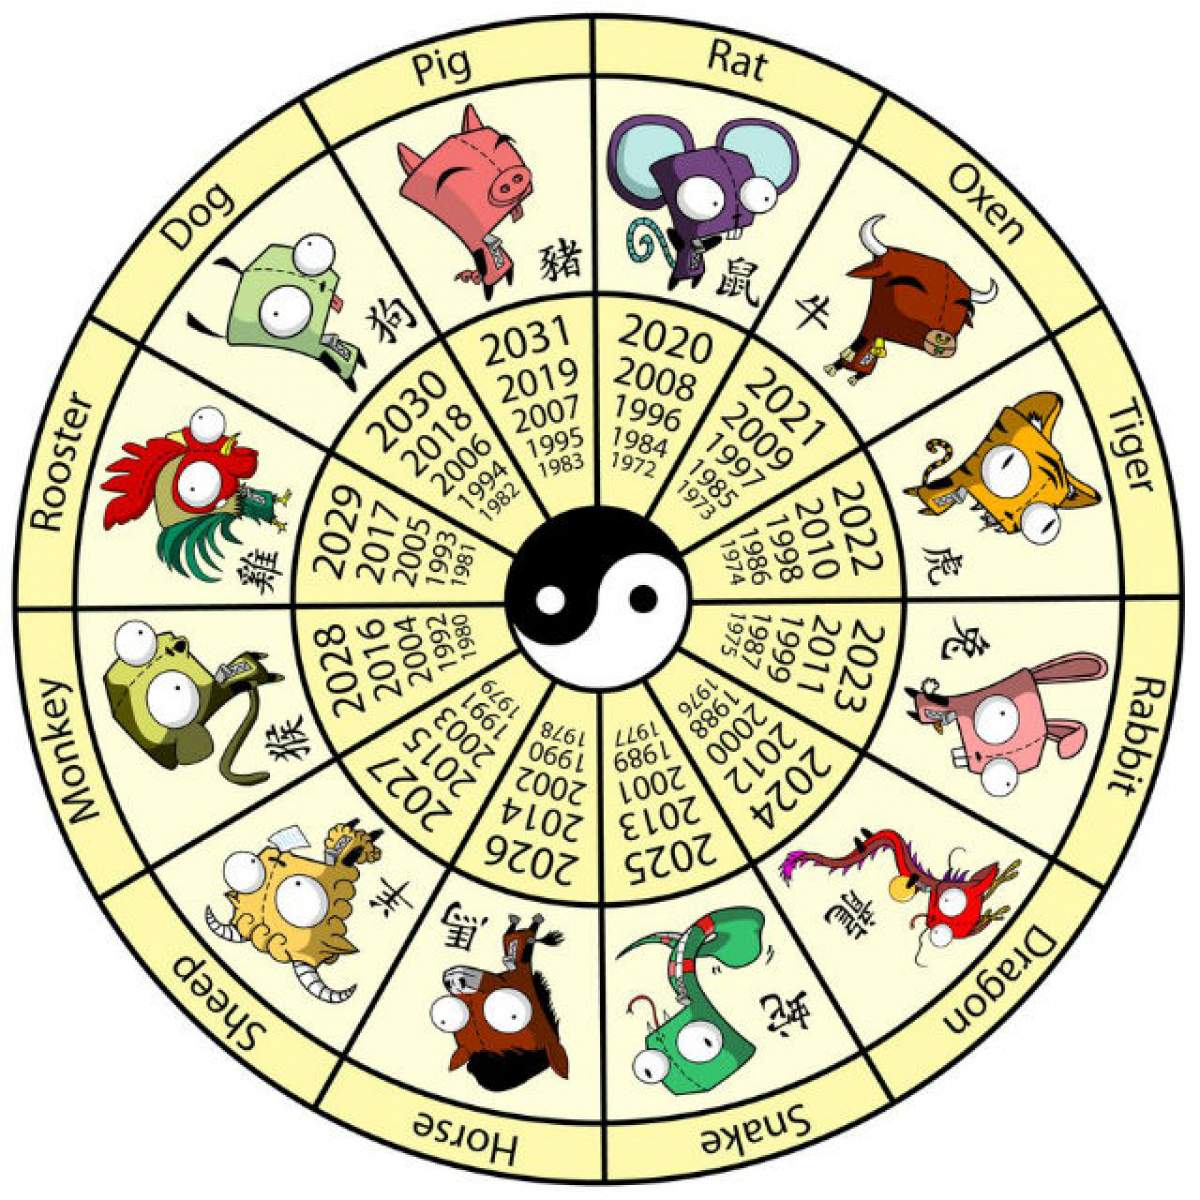 Horoscopul chinezesc nu minte niciodată! Specialiştii spun previziuni reale pentru fiecare zodie în parte, pentru anul 2016